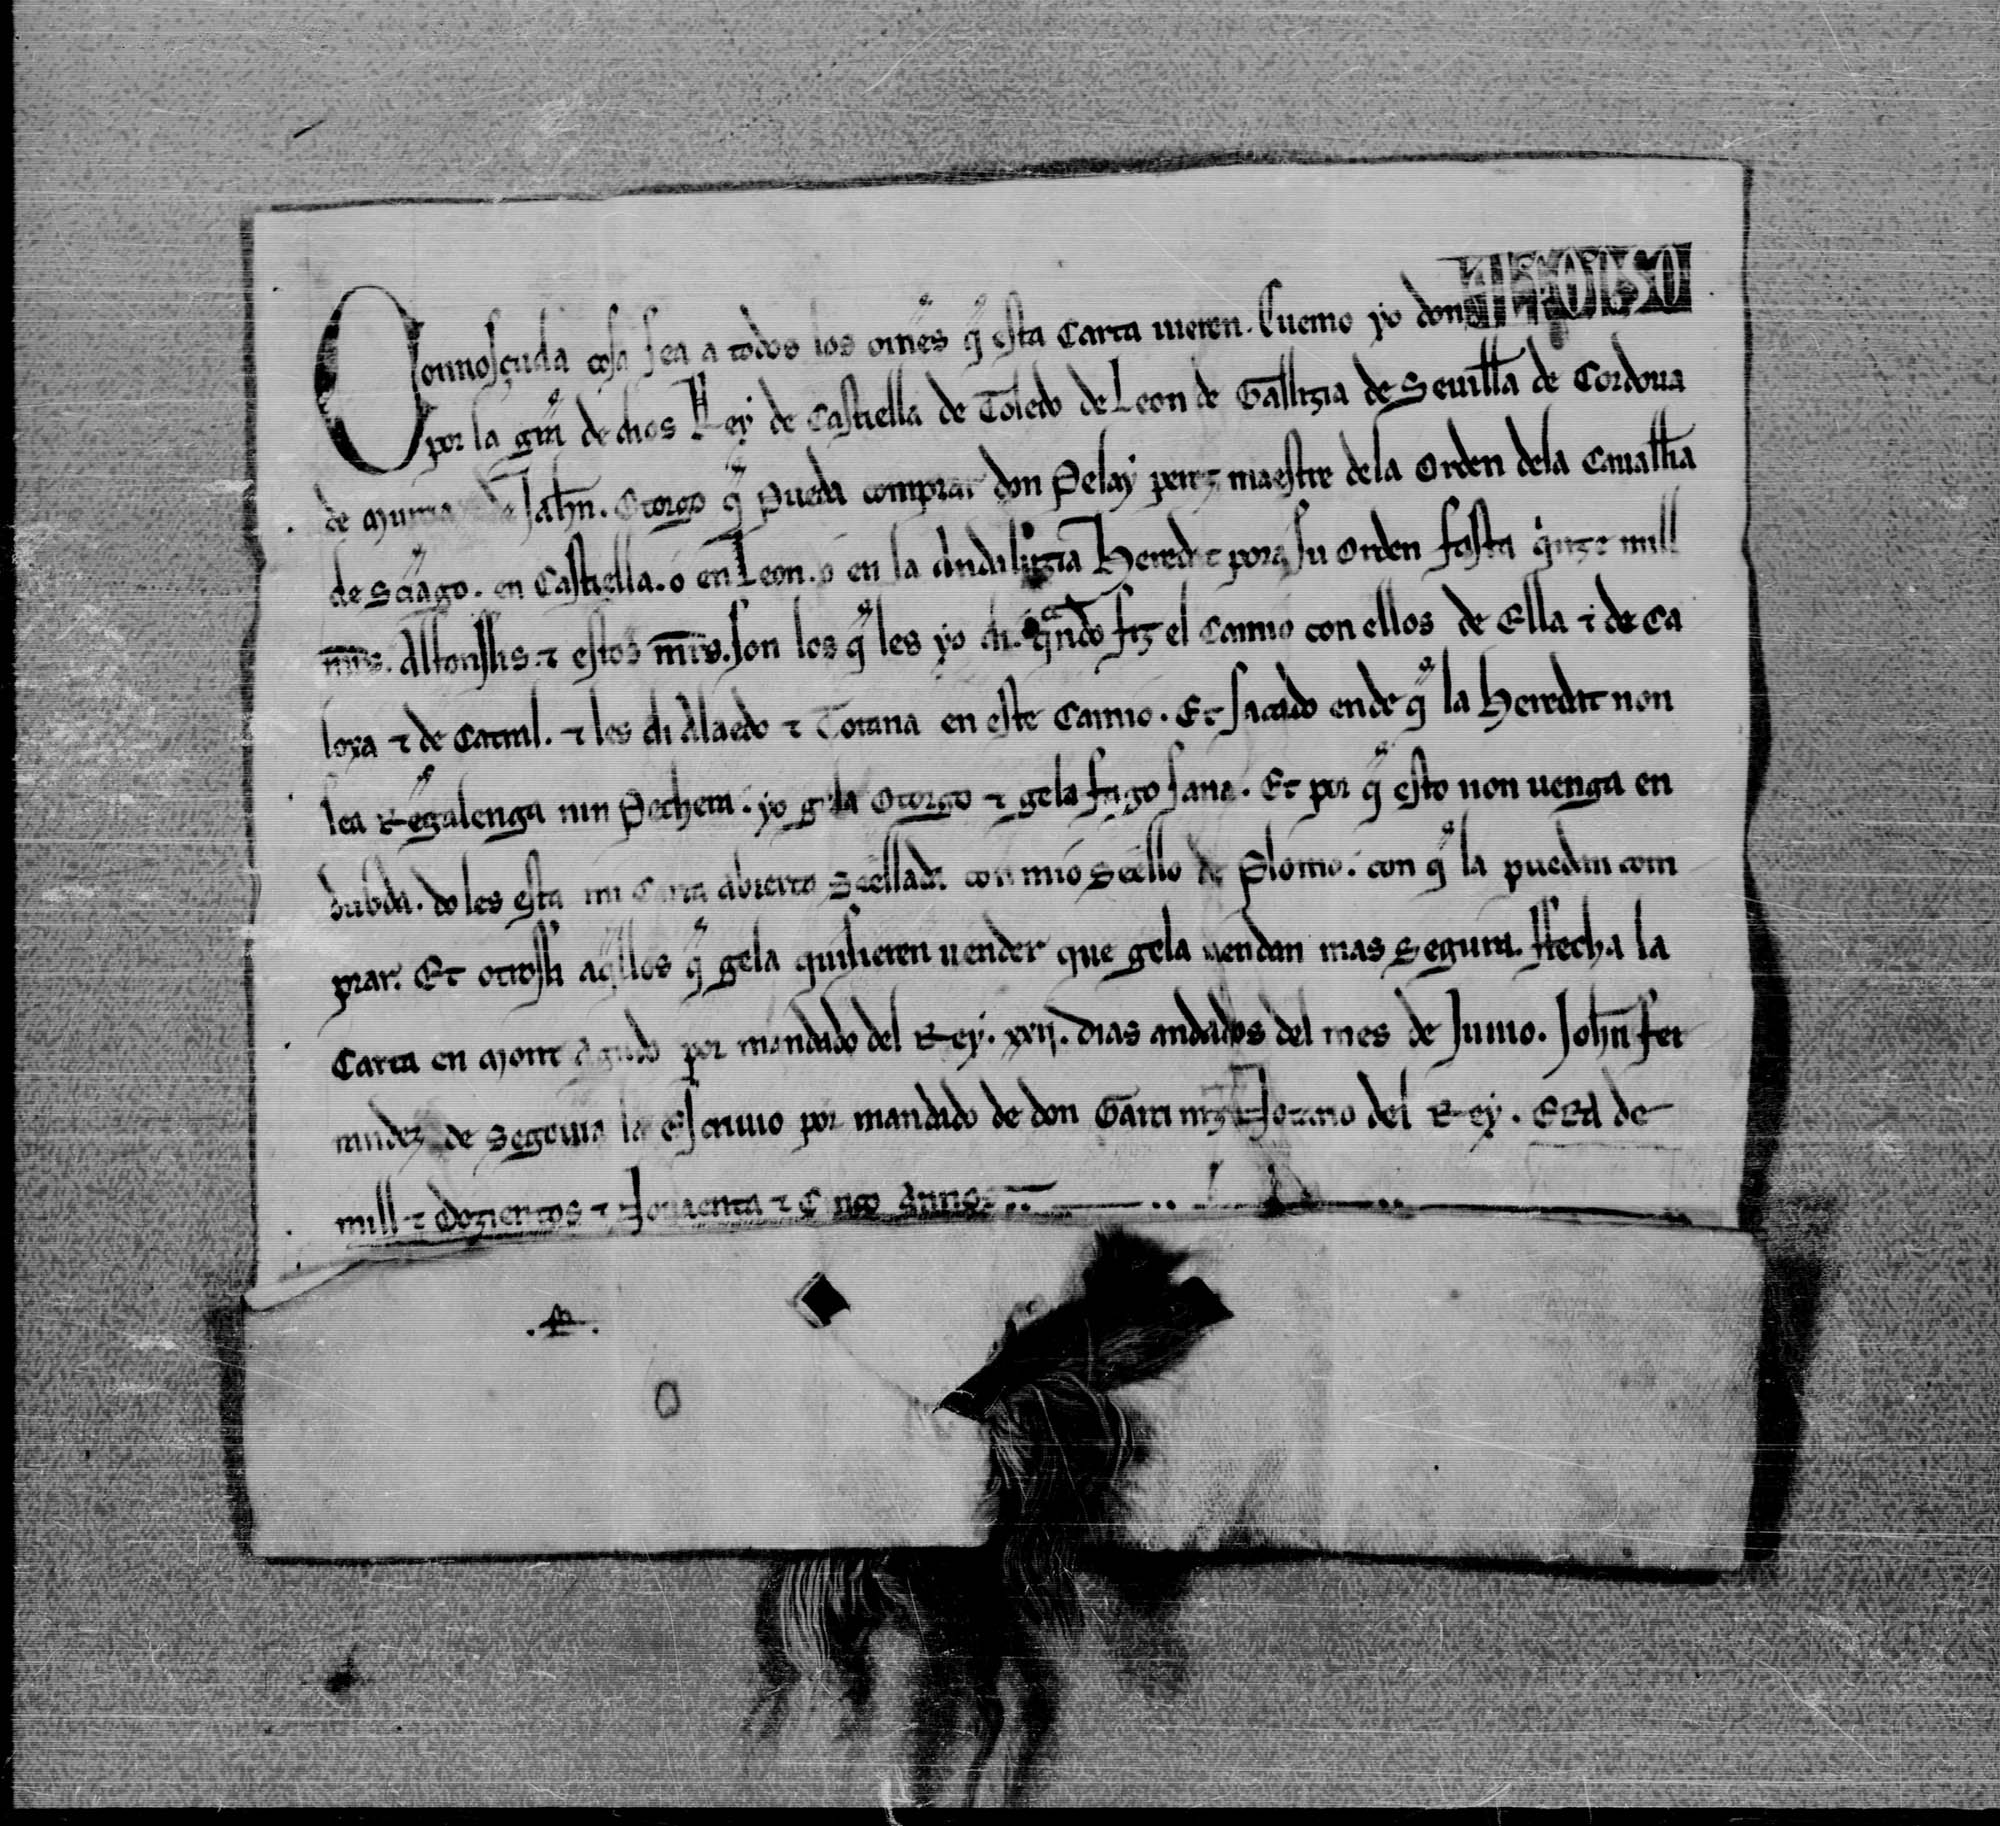 Carta real de Alfonso X otorgando a Pelay Pérez, maestre de la Orden de la caballería de Santiago, que pueda comprar una heredad en Castilla, León o Andalucía con los 15.000 maravedíes alfonsíes que le dio Alfonso X en el trueque de Caloxa y Catral con Aledo y Totana.